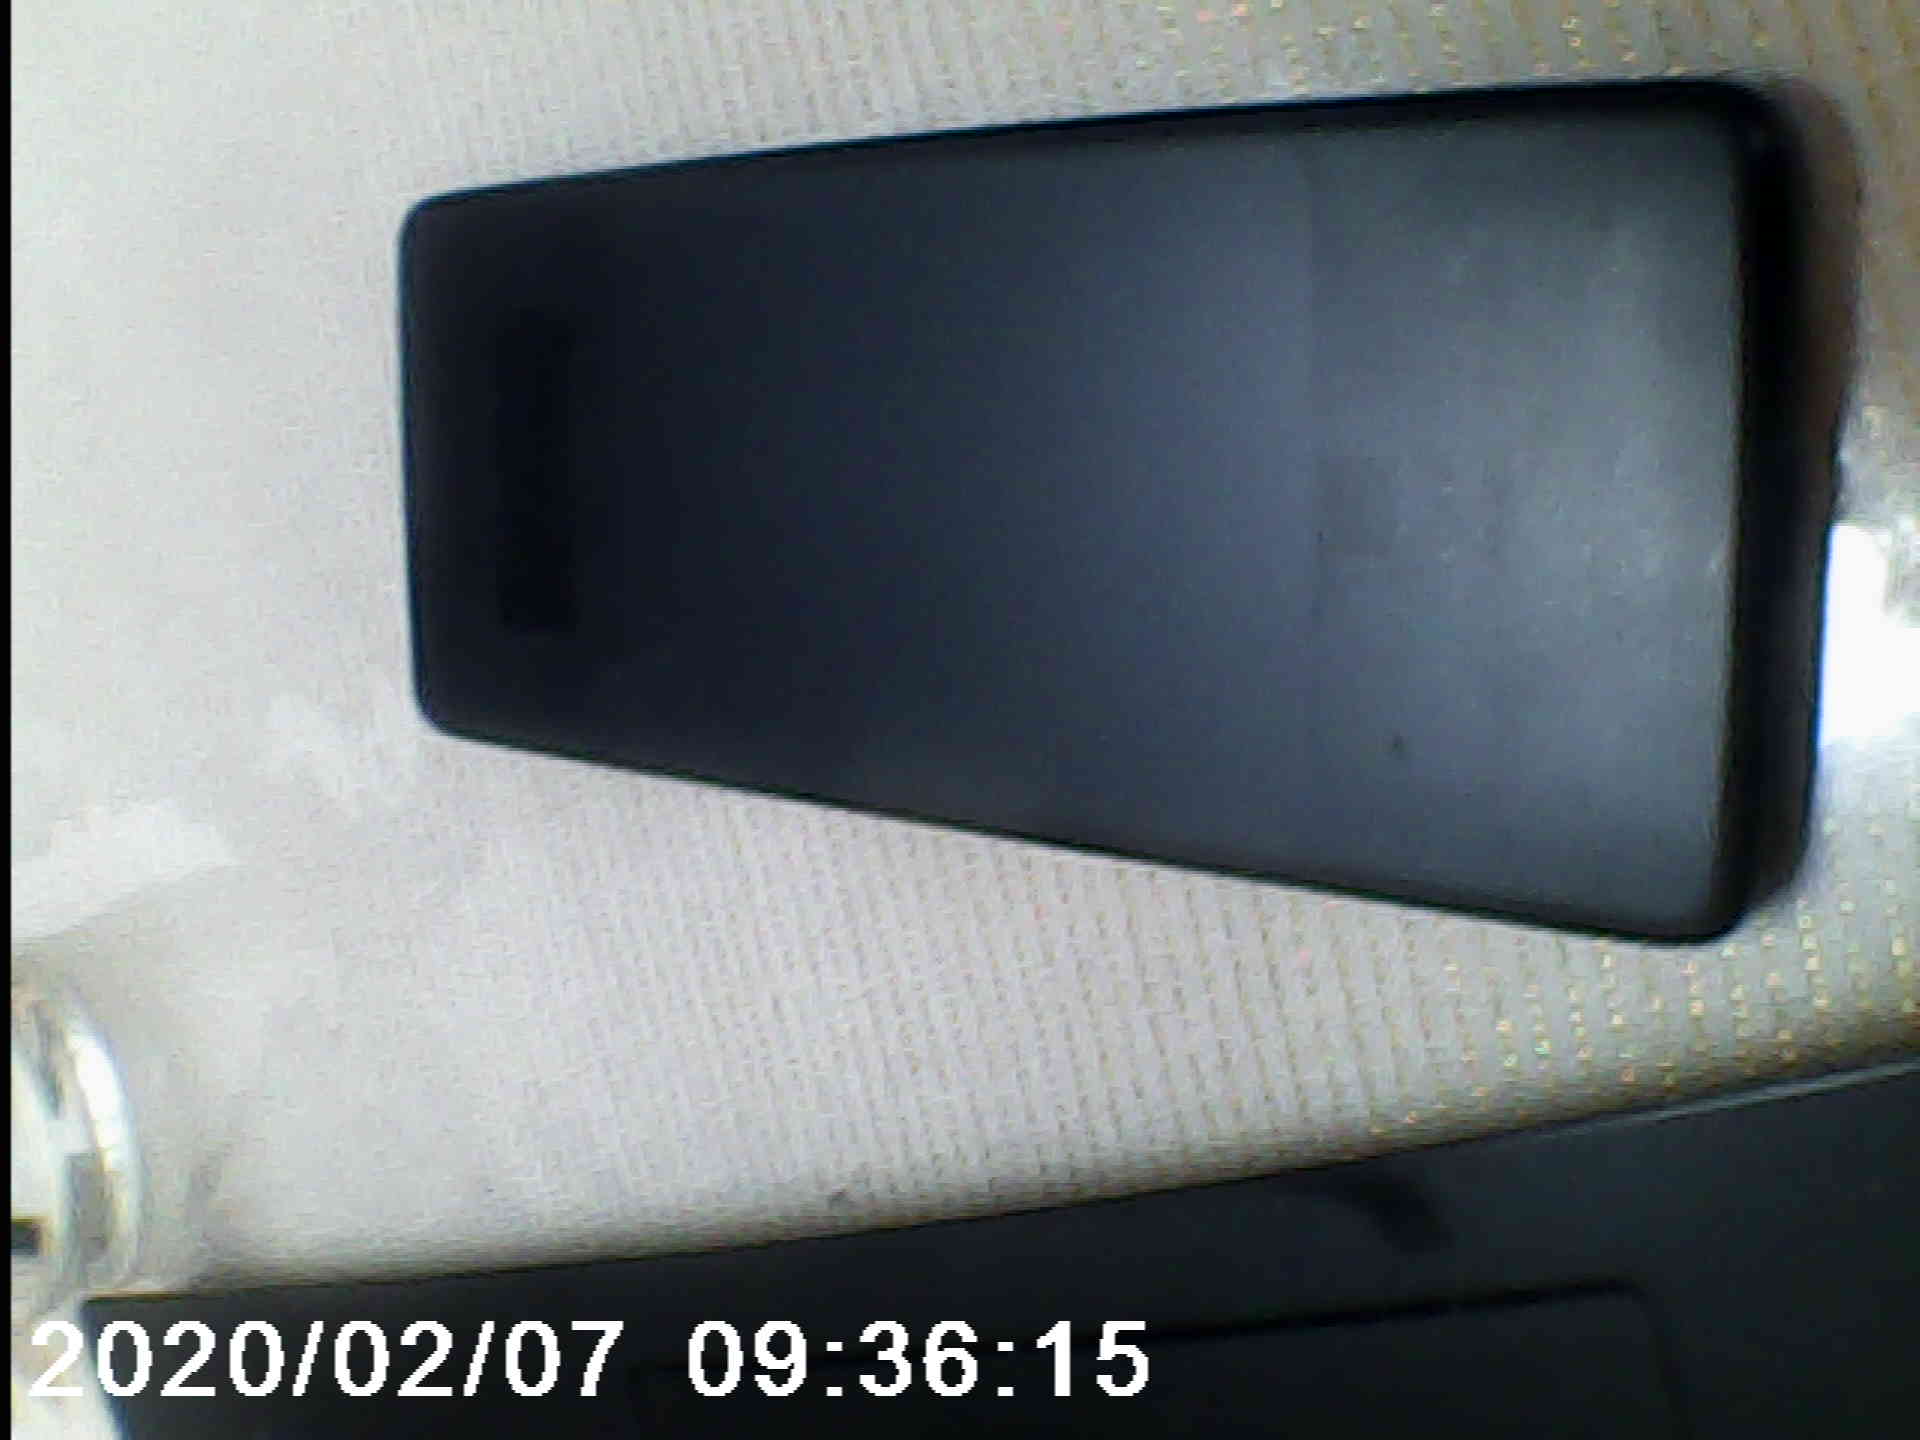 תמונה 2 ,טלפון שיאומי חדש בקופסא למכירה בצפת סלולרי  שונות